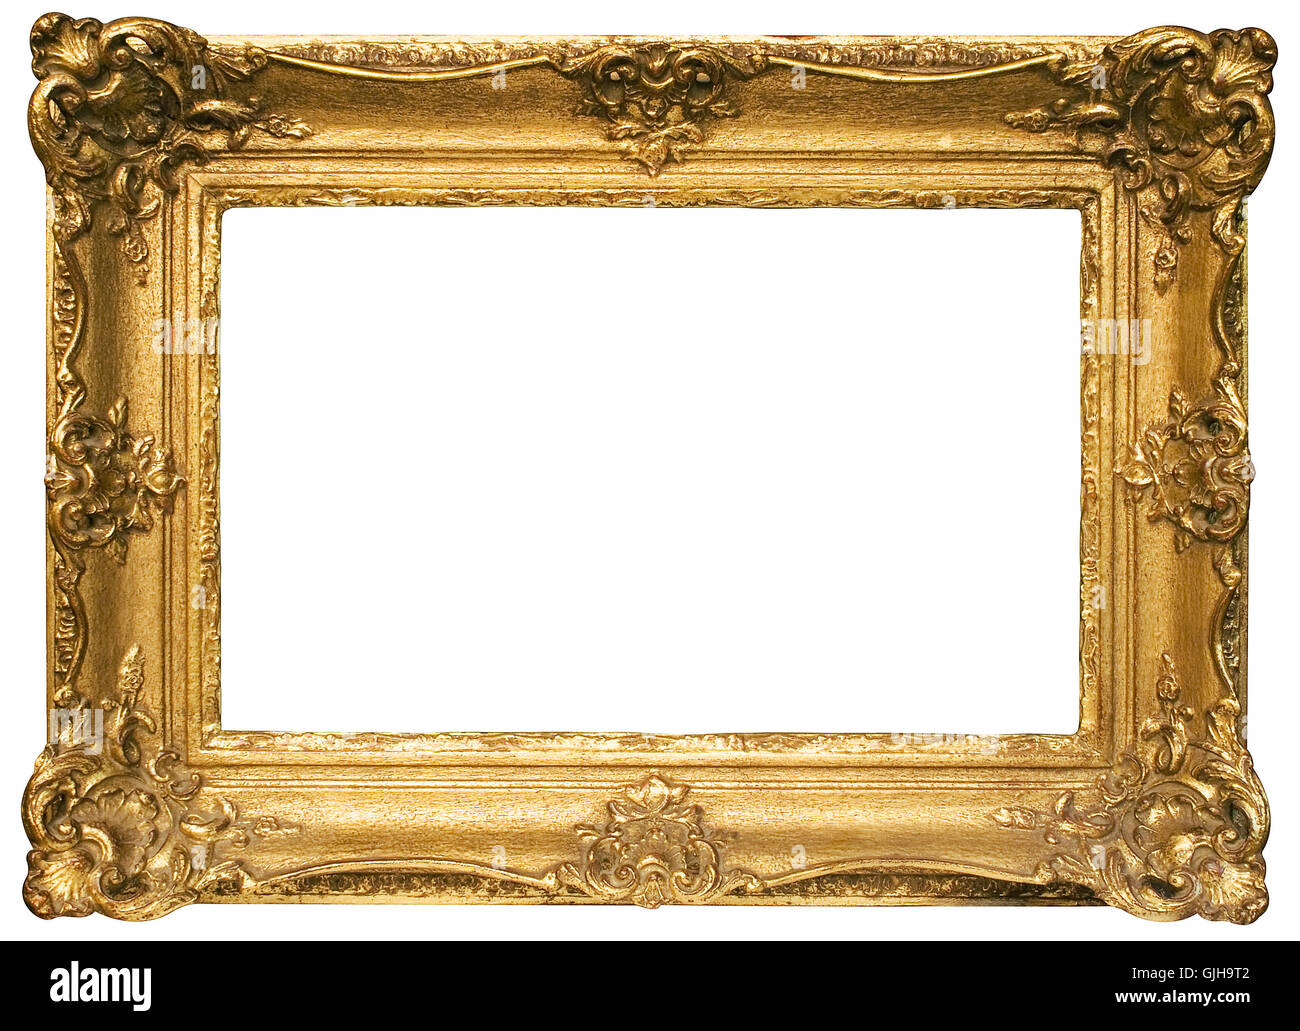 gold frame landscape Stock Photo - Alamy